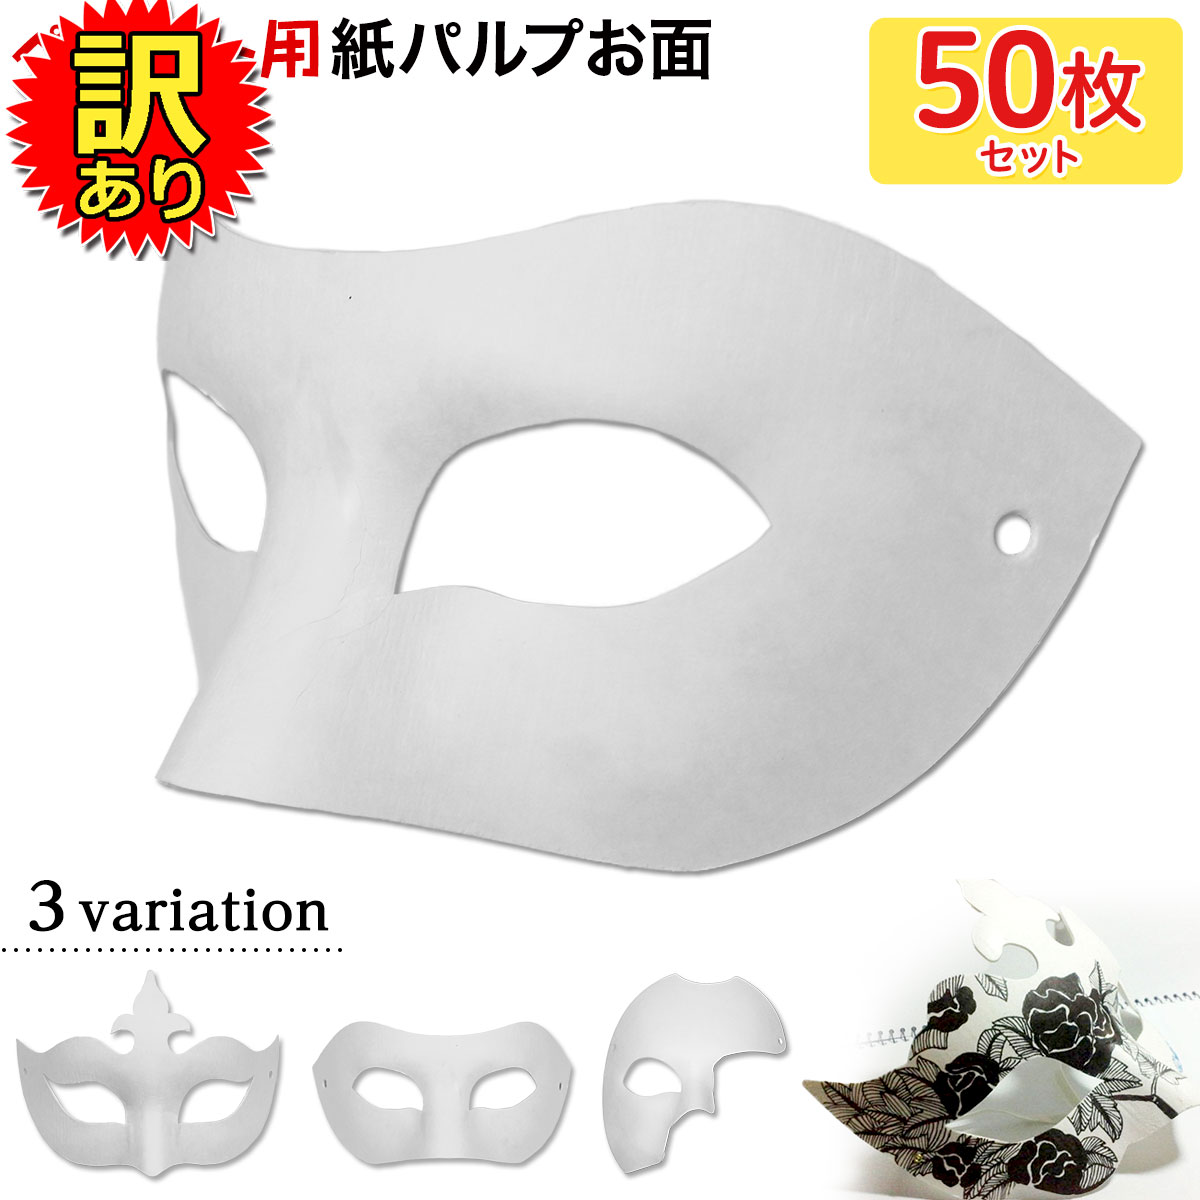 【訳あり】 お面 ホワイトマスク アイマスク 仮面 無地 ペイント 紙パルプ製 50枚セット